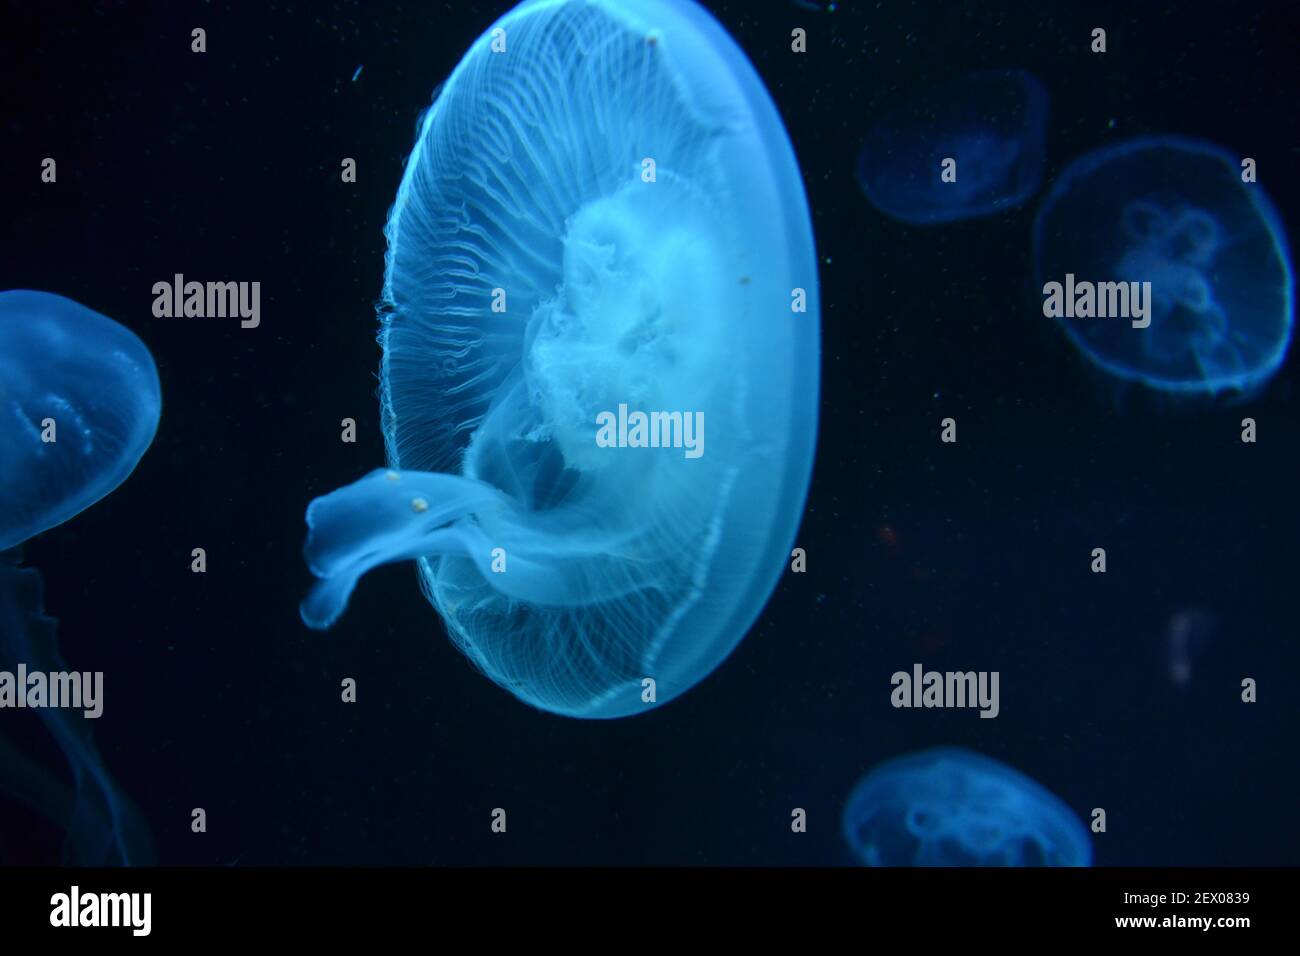 Illuminated Jellyfish in the dark Stock Photo